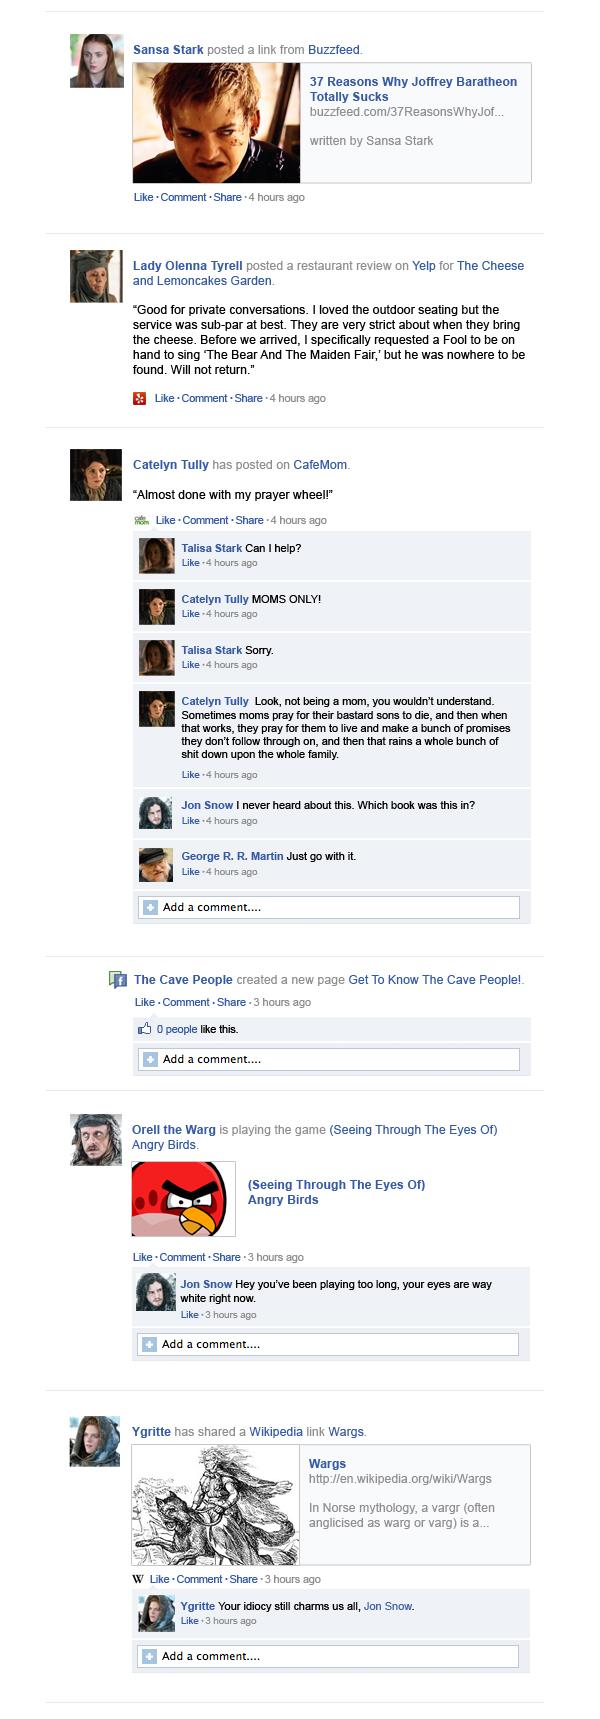 Game Of Thrones - The Hilarious Facebook Recap